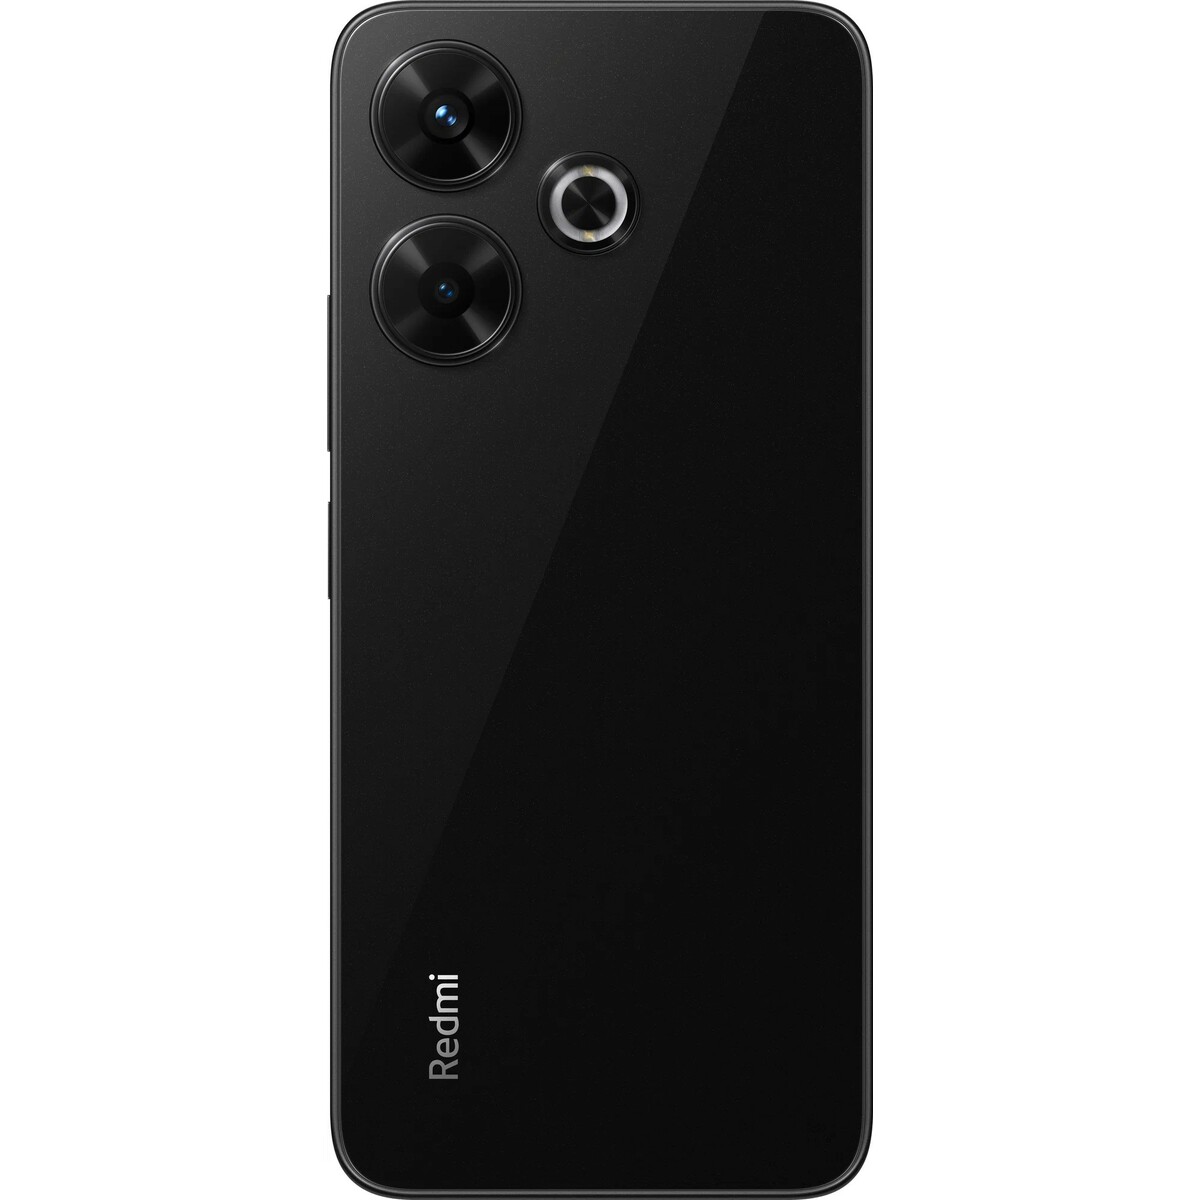 Смартфон Xiaomi Redmi 13 6/128Gb, черный